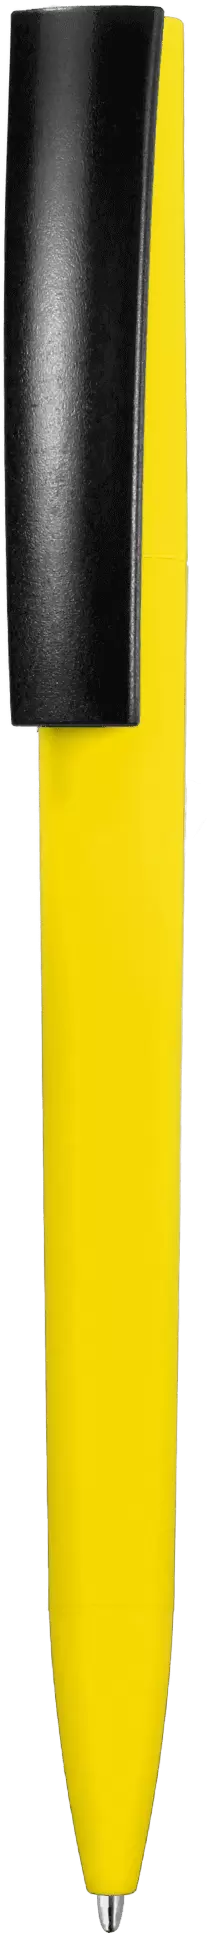 Ручка ZETA SOFT MIX Желтая с черным 1024-04-08